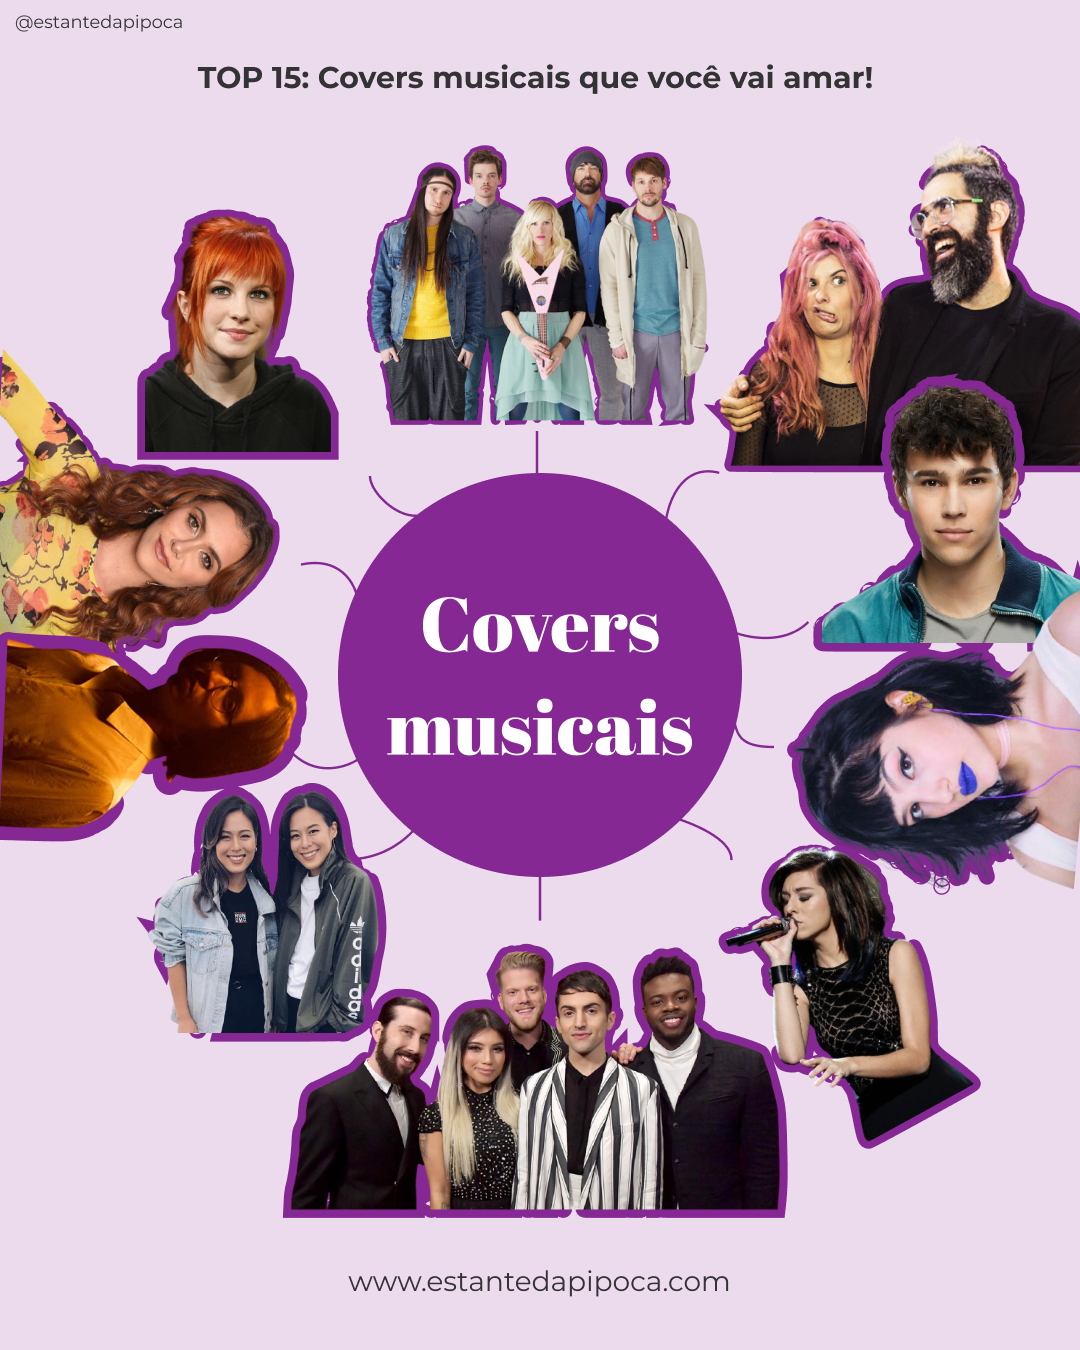 TOP 15: Covers musicais que você vai amar